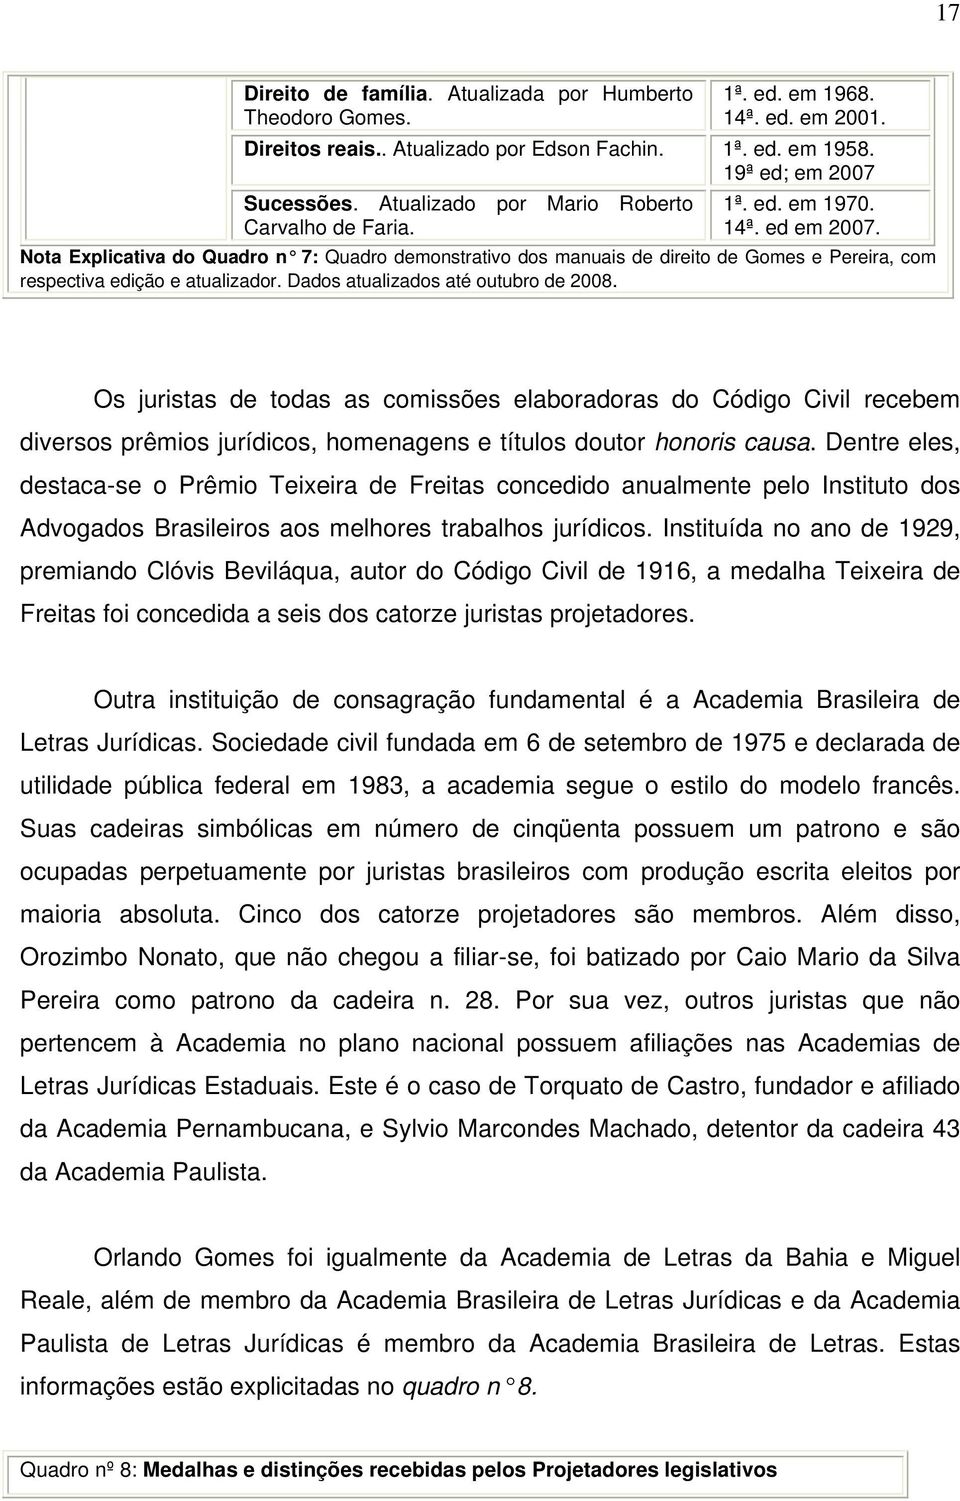 Nota Explicativa do Quadro n 7: Quadro demonstrativo dos manuais de direito de Gomes e Pereira, com respectiva edição e atualizador. Dados atualizados até outubro de 2008.